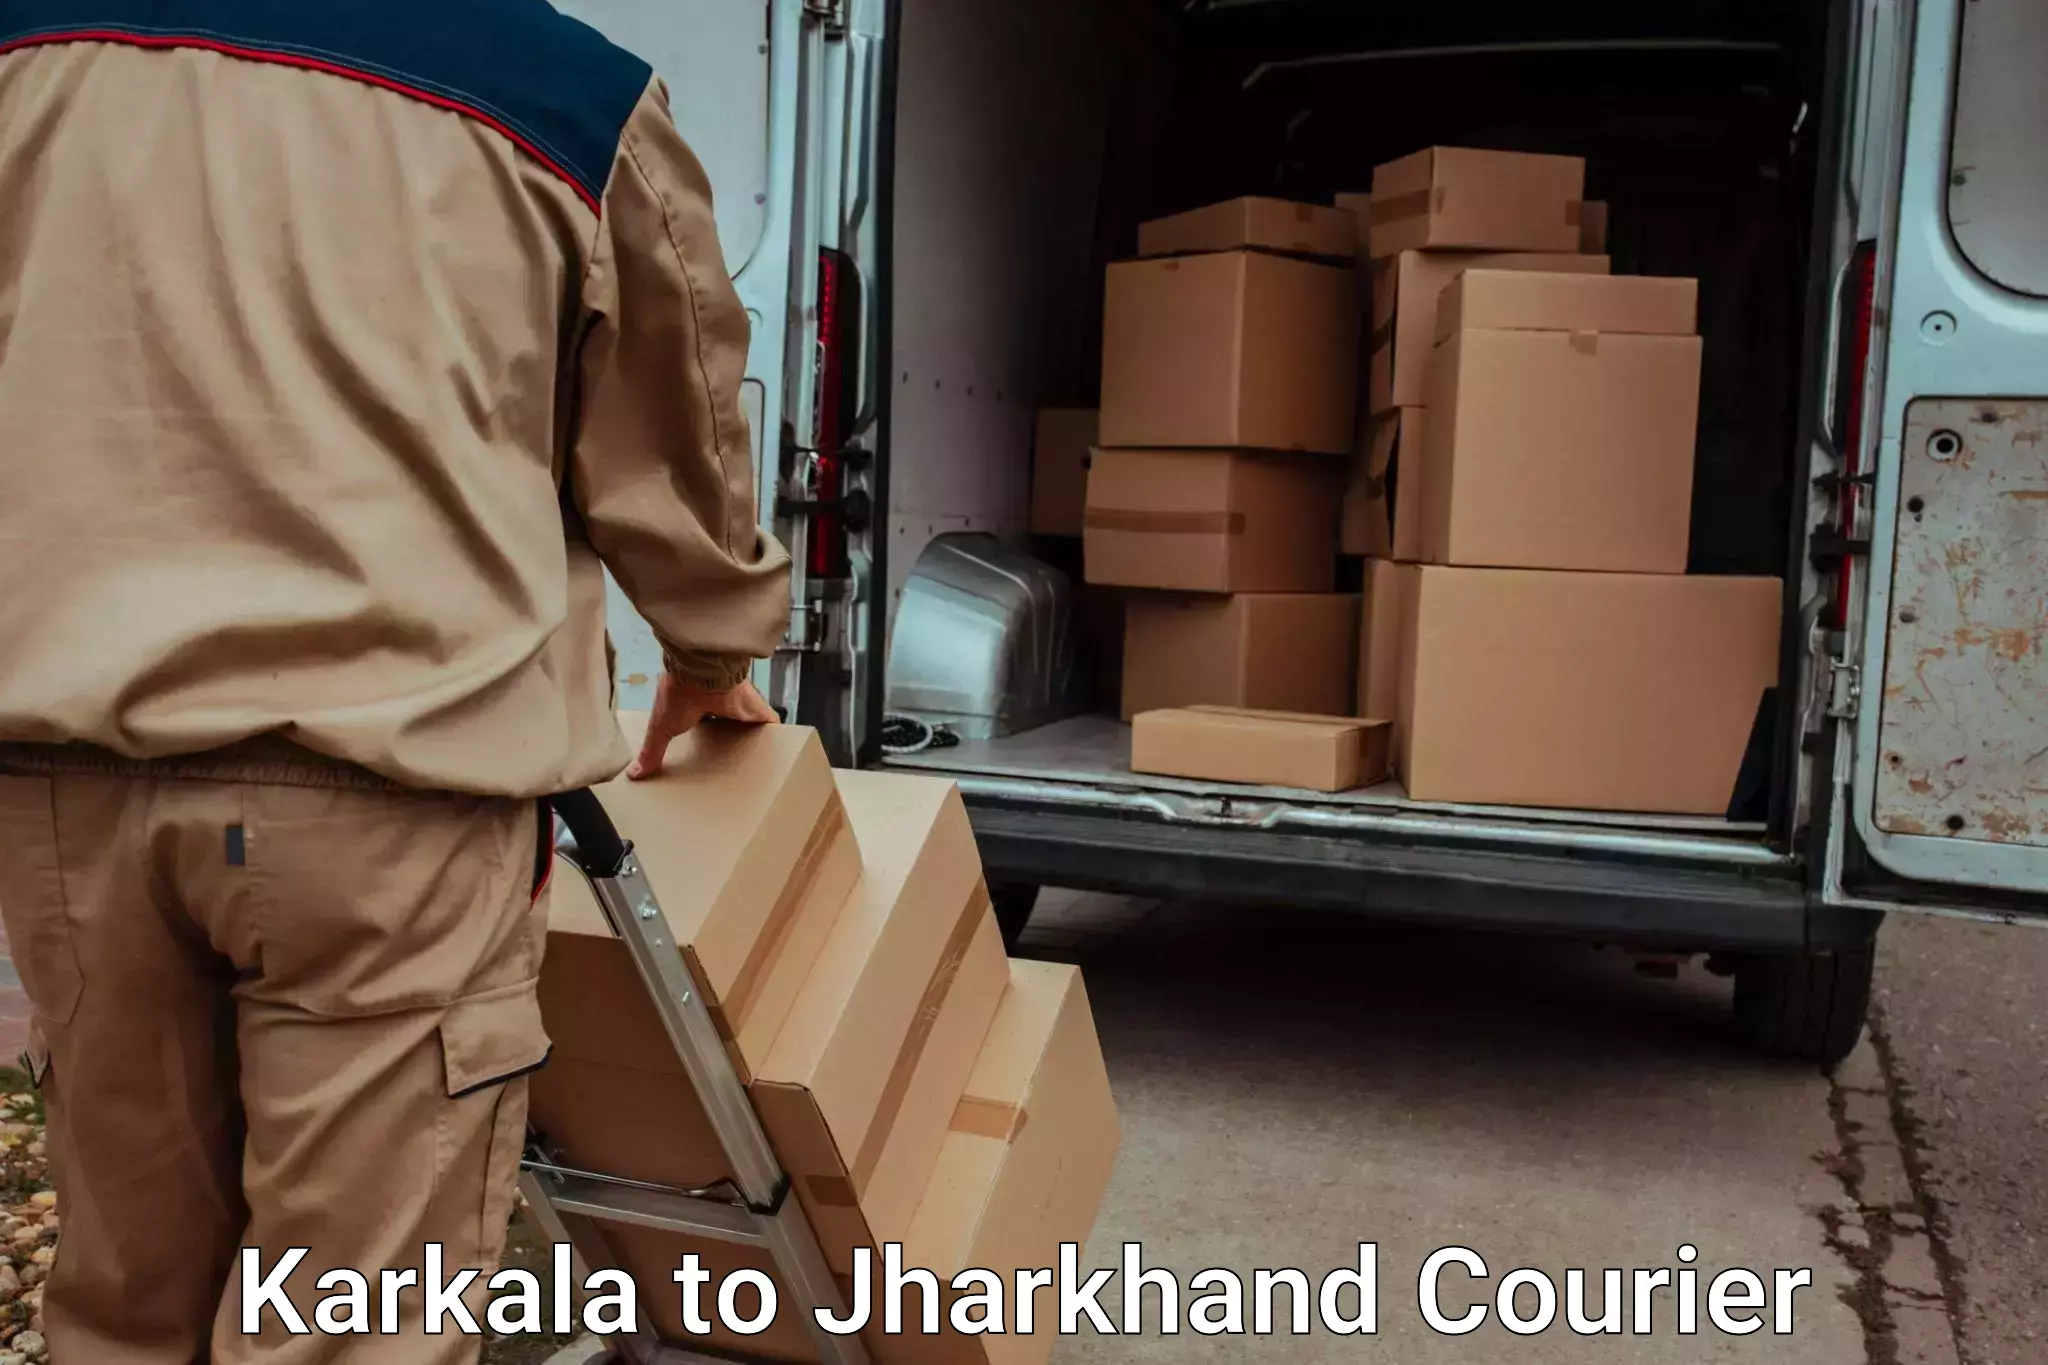 Efficient relocation services Karkala to Medininagar